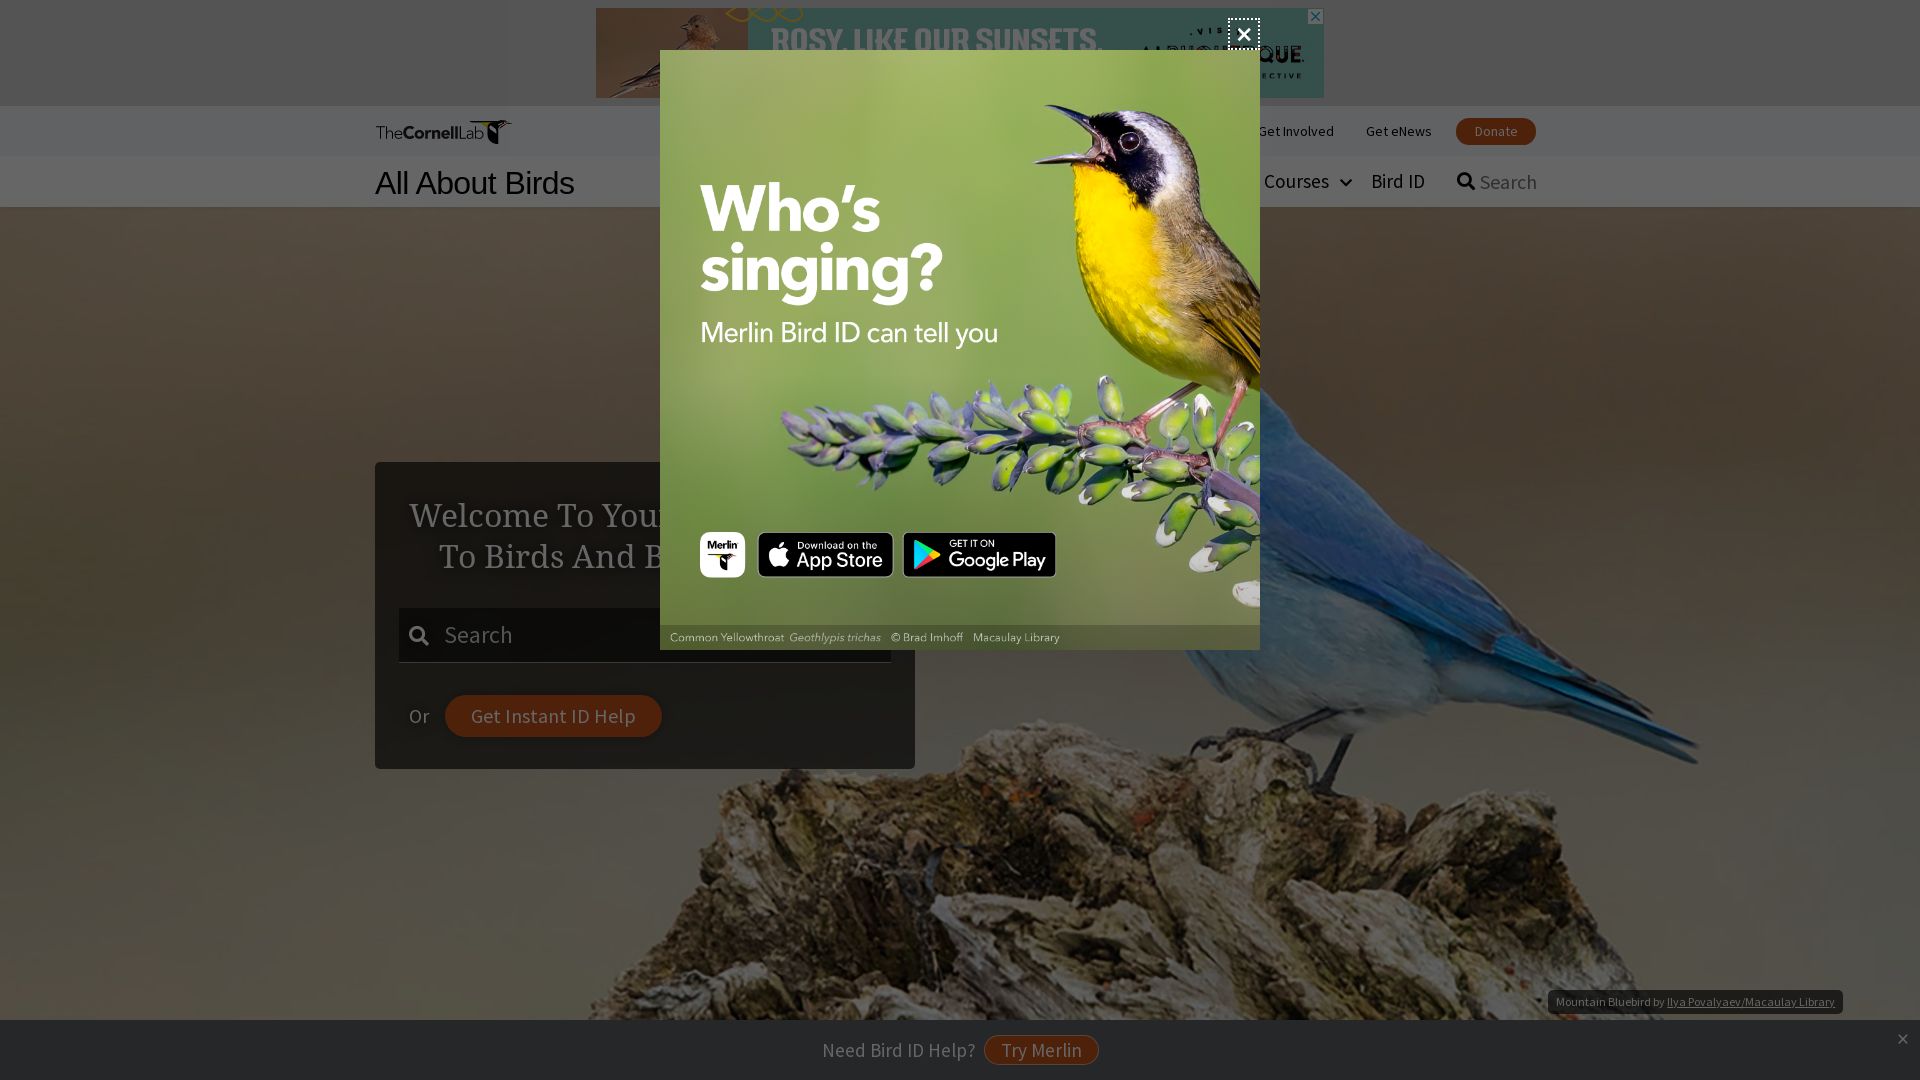 Estado web allaboutbirds.org está   ONLINE